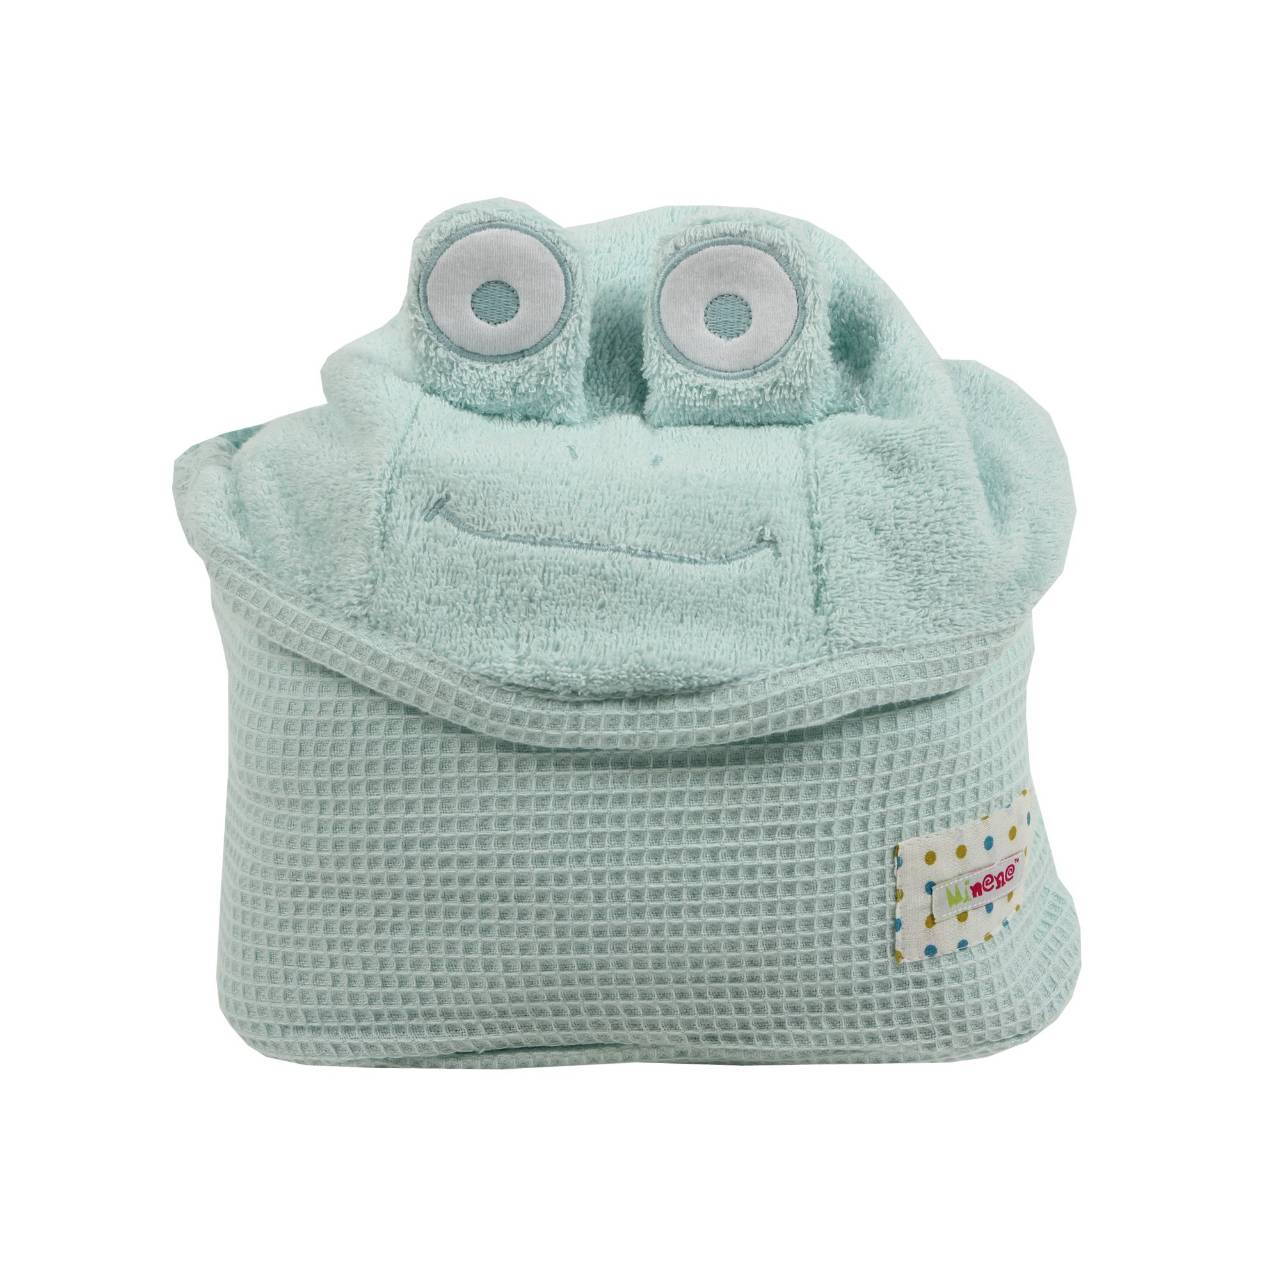 Handsfree Cuddly Towel